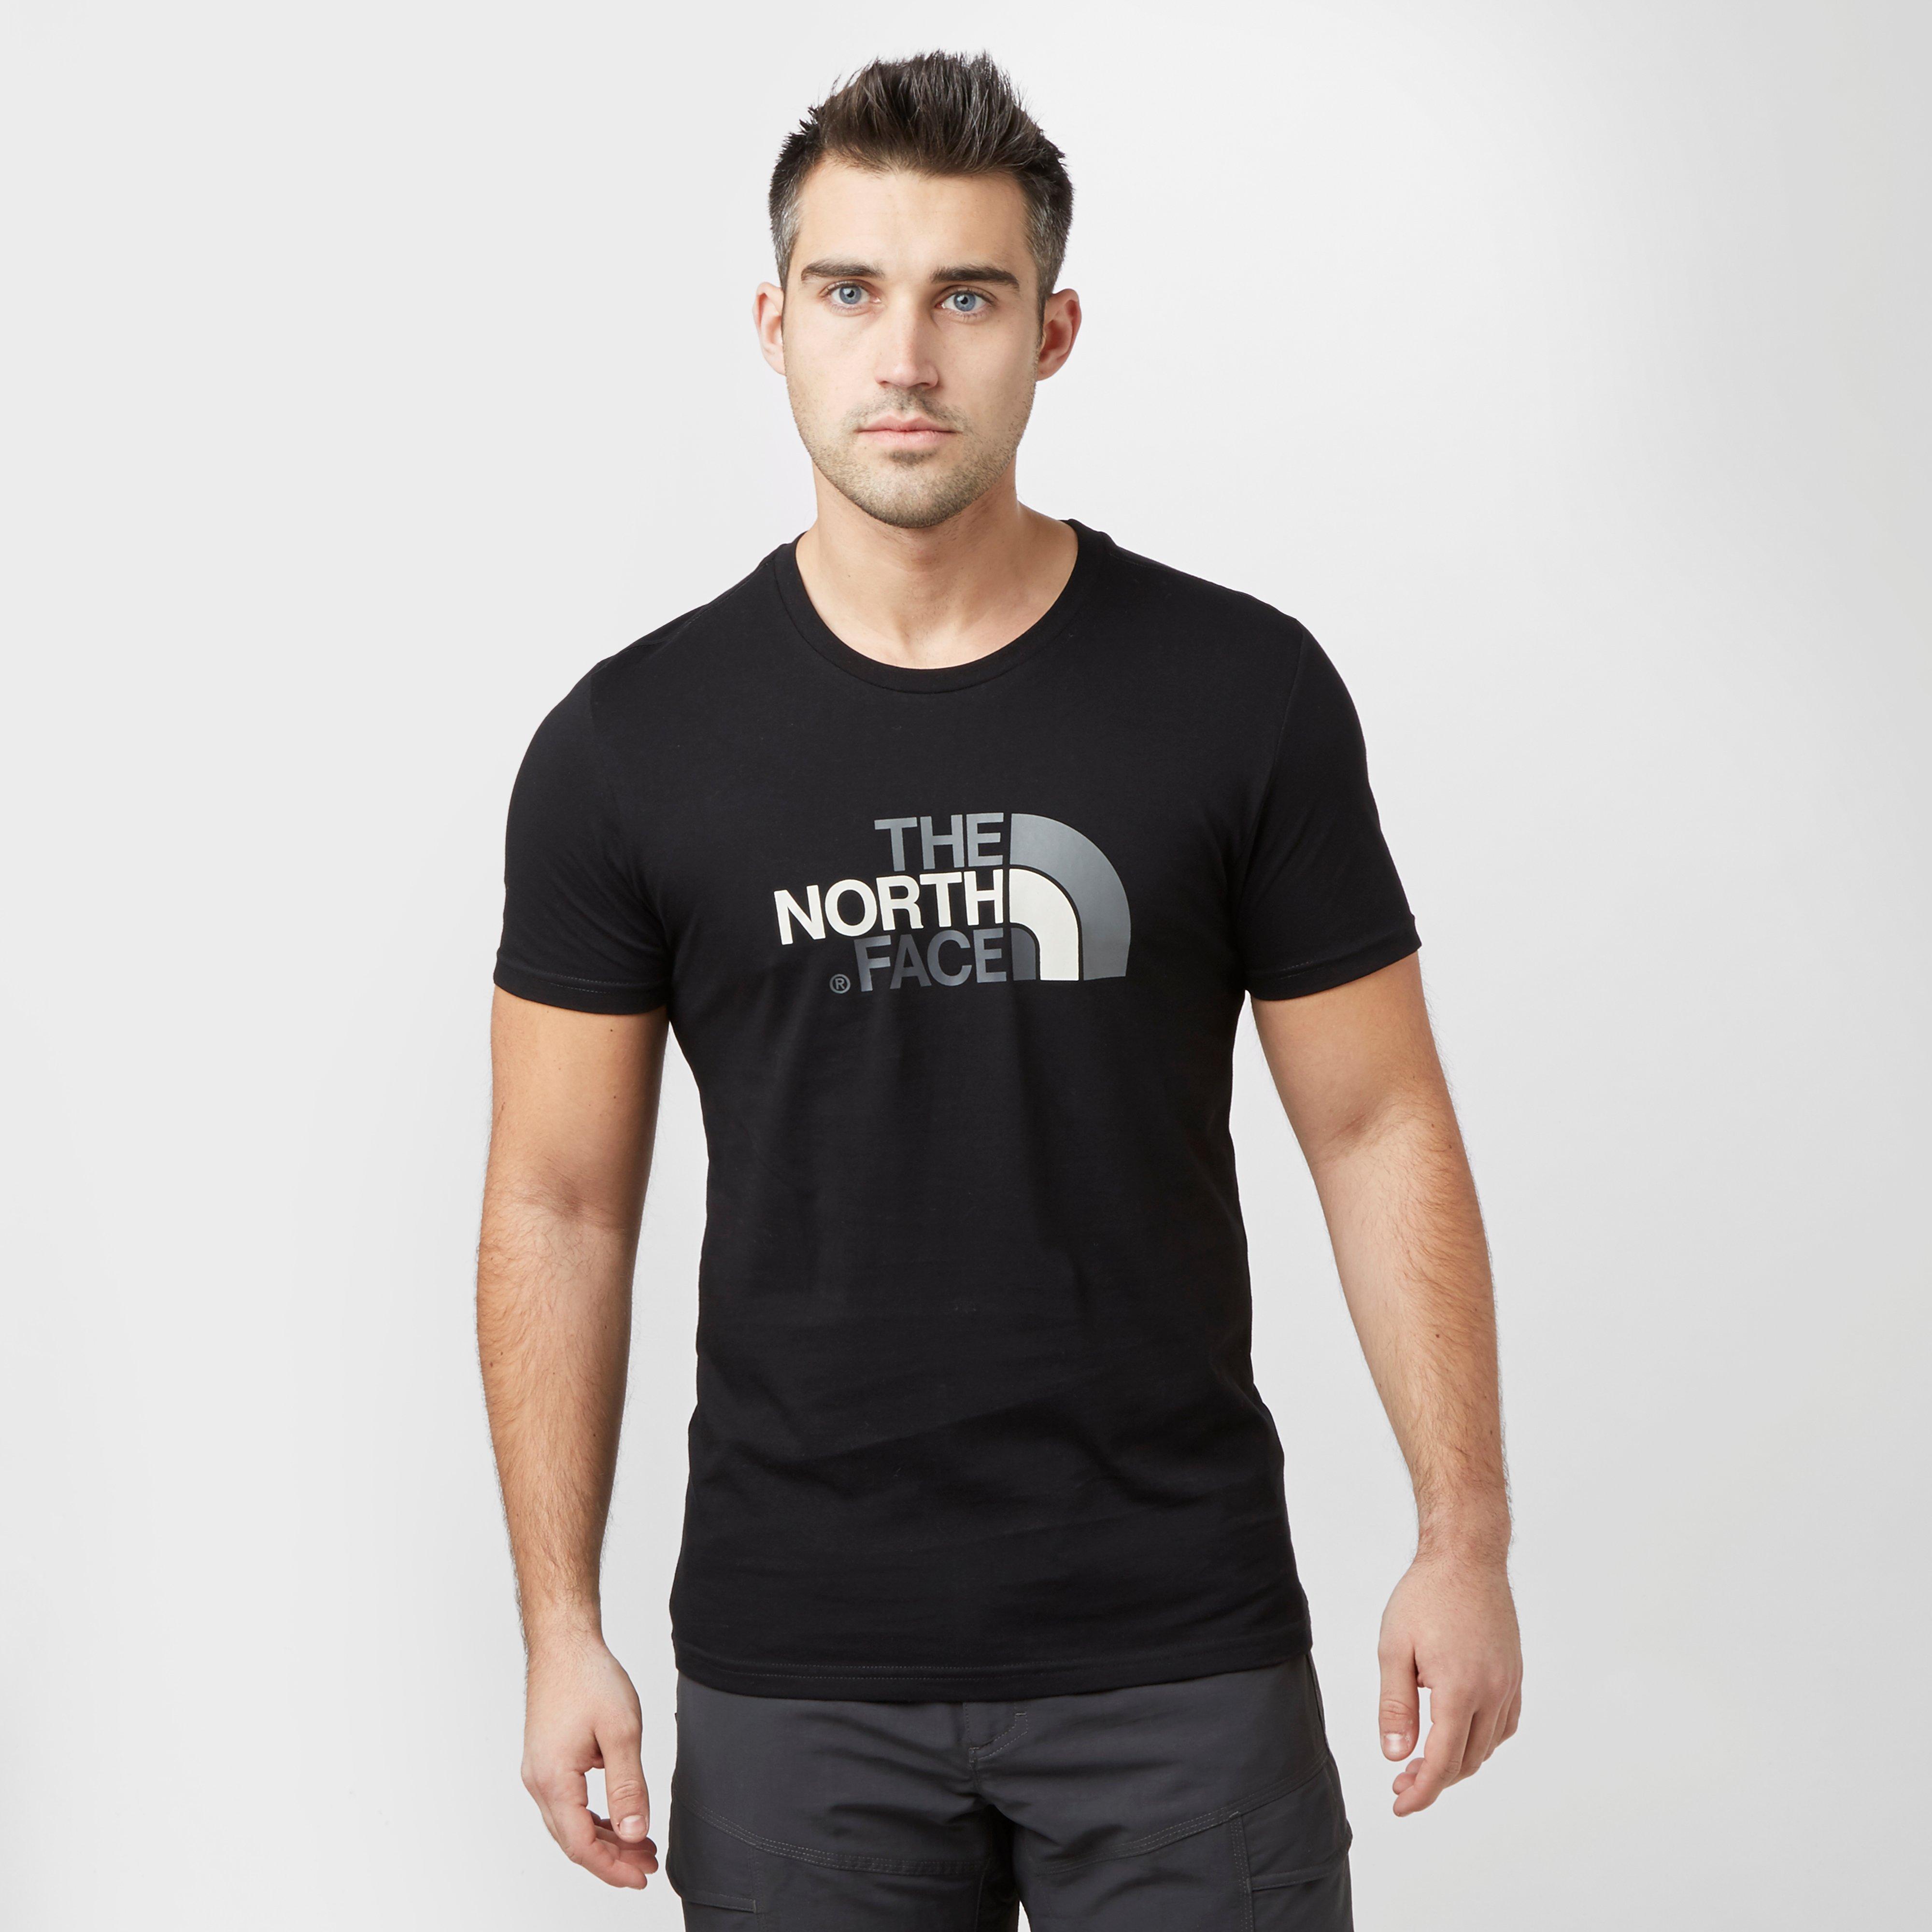 the north face shirts mens